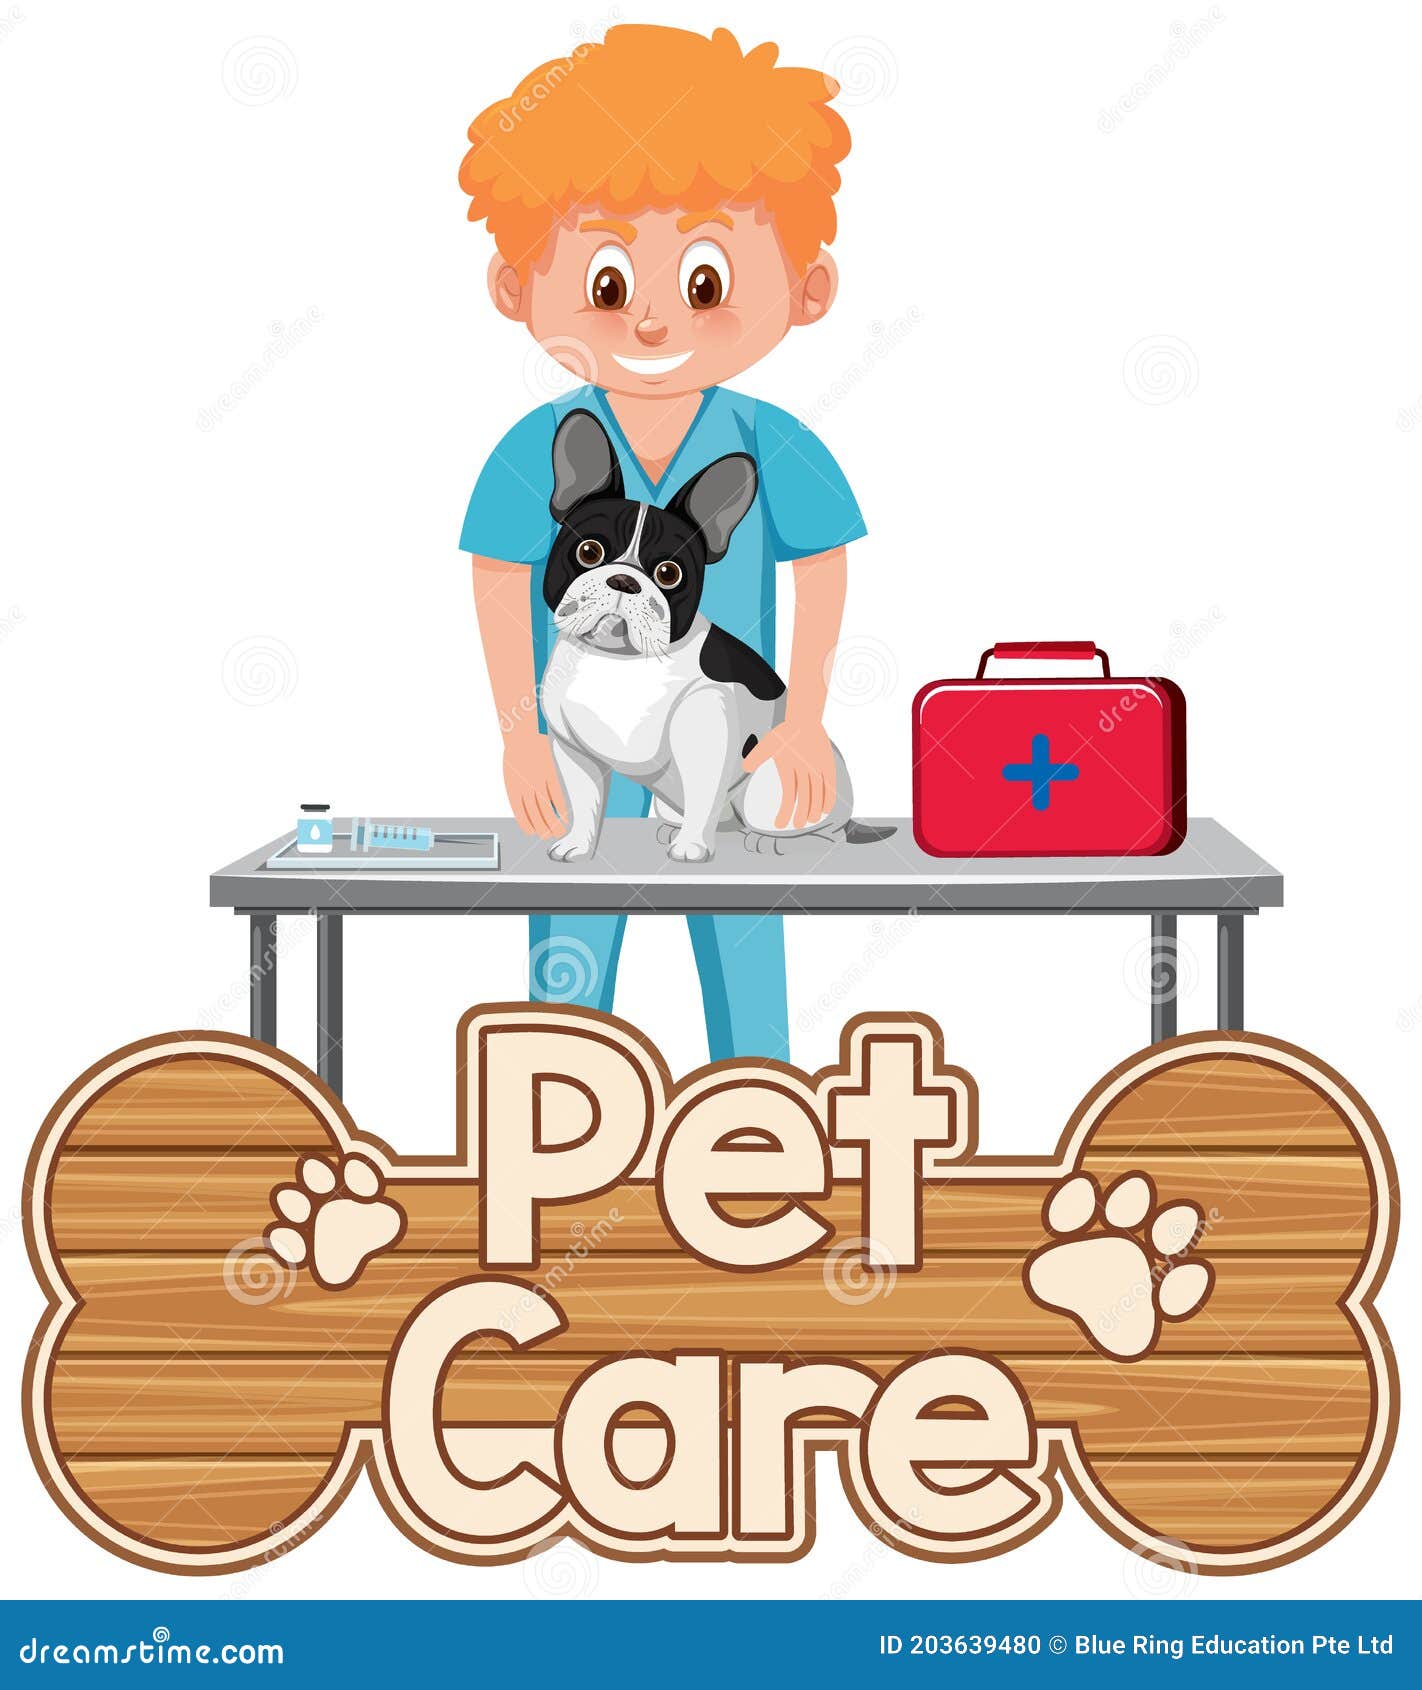 Premium Vector | Pets doctor logo